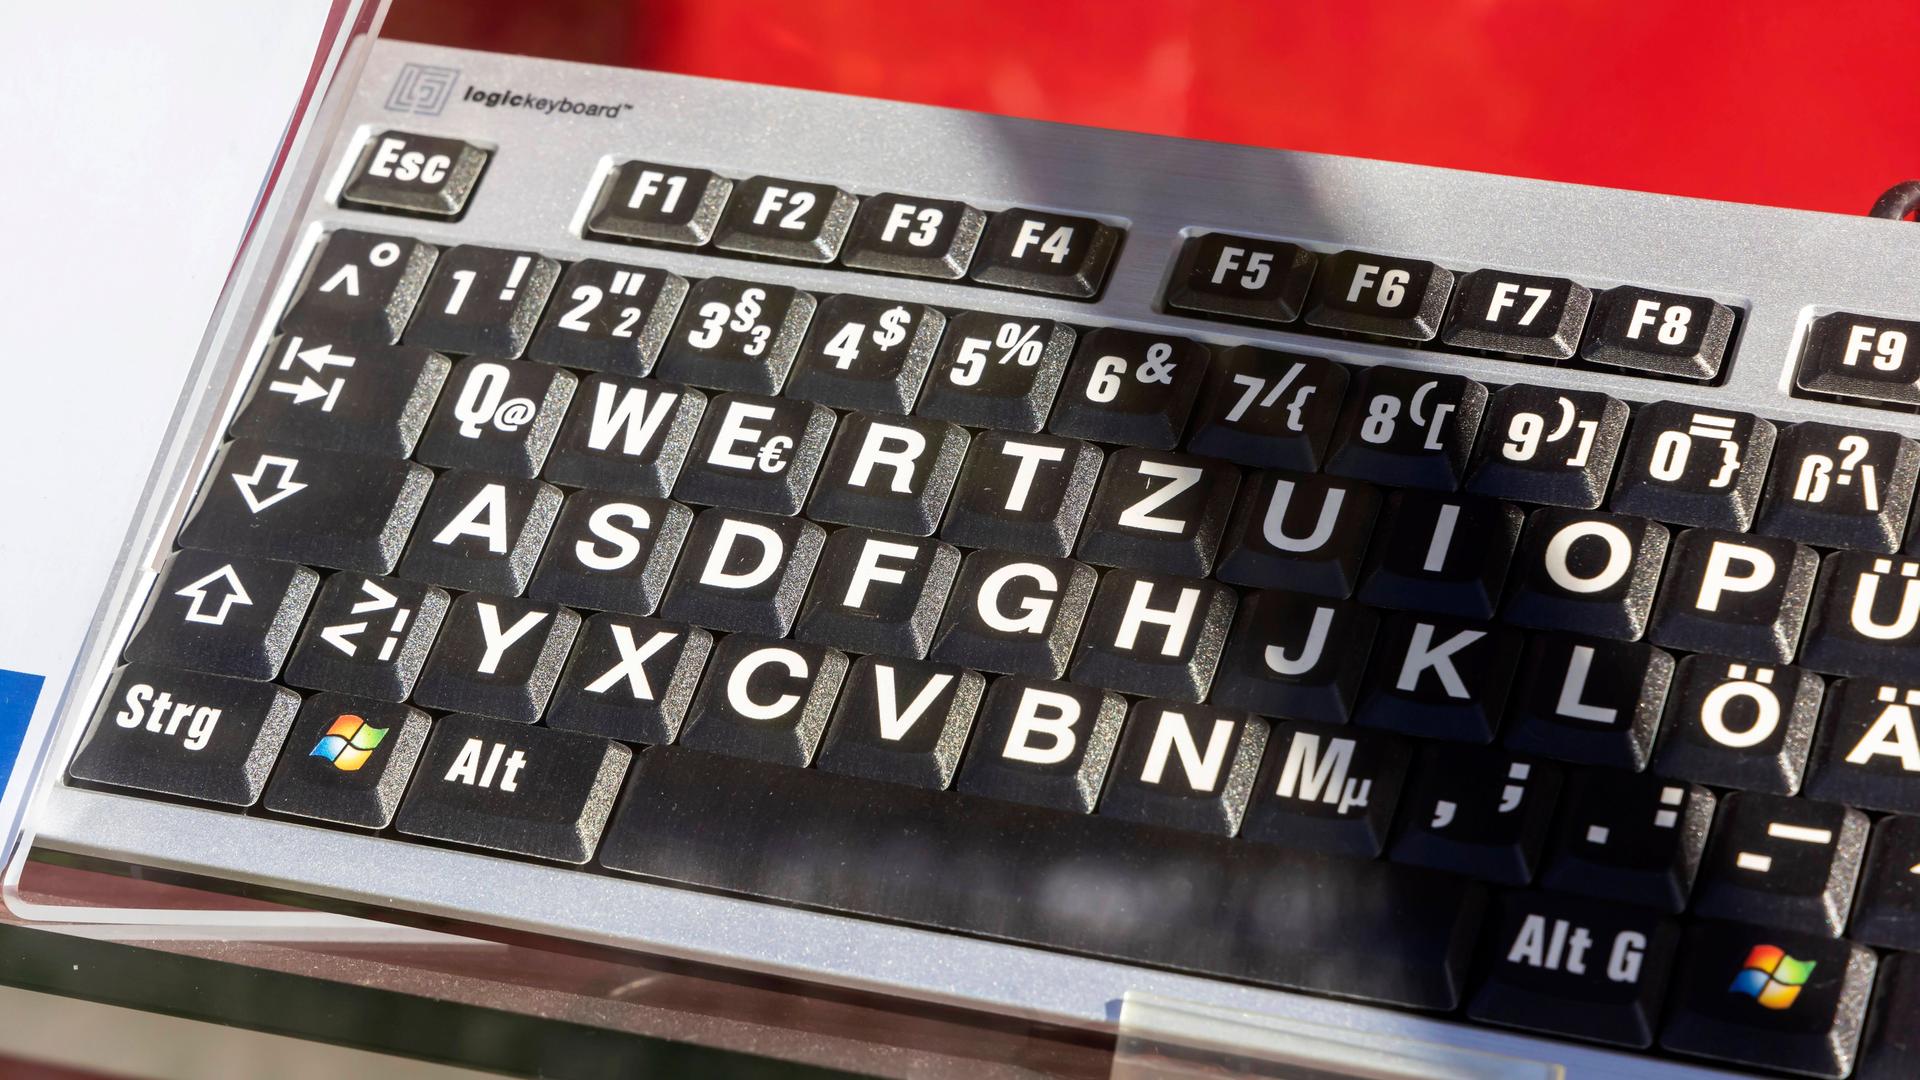 Das Foto zeigt eine Tastatur mit besonders großen Buchstaben.